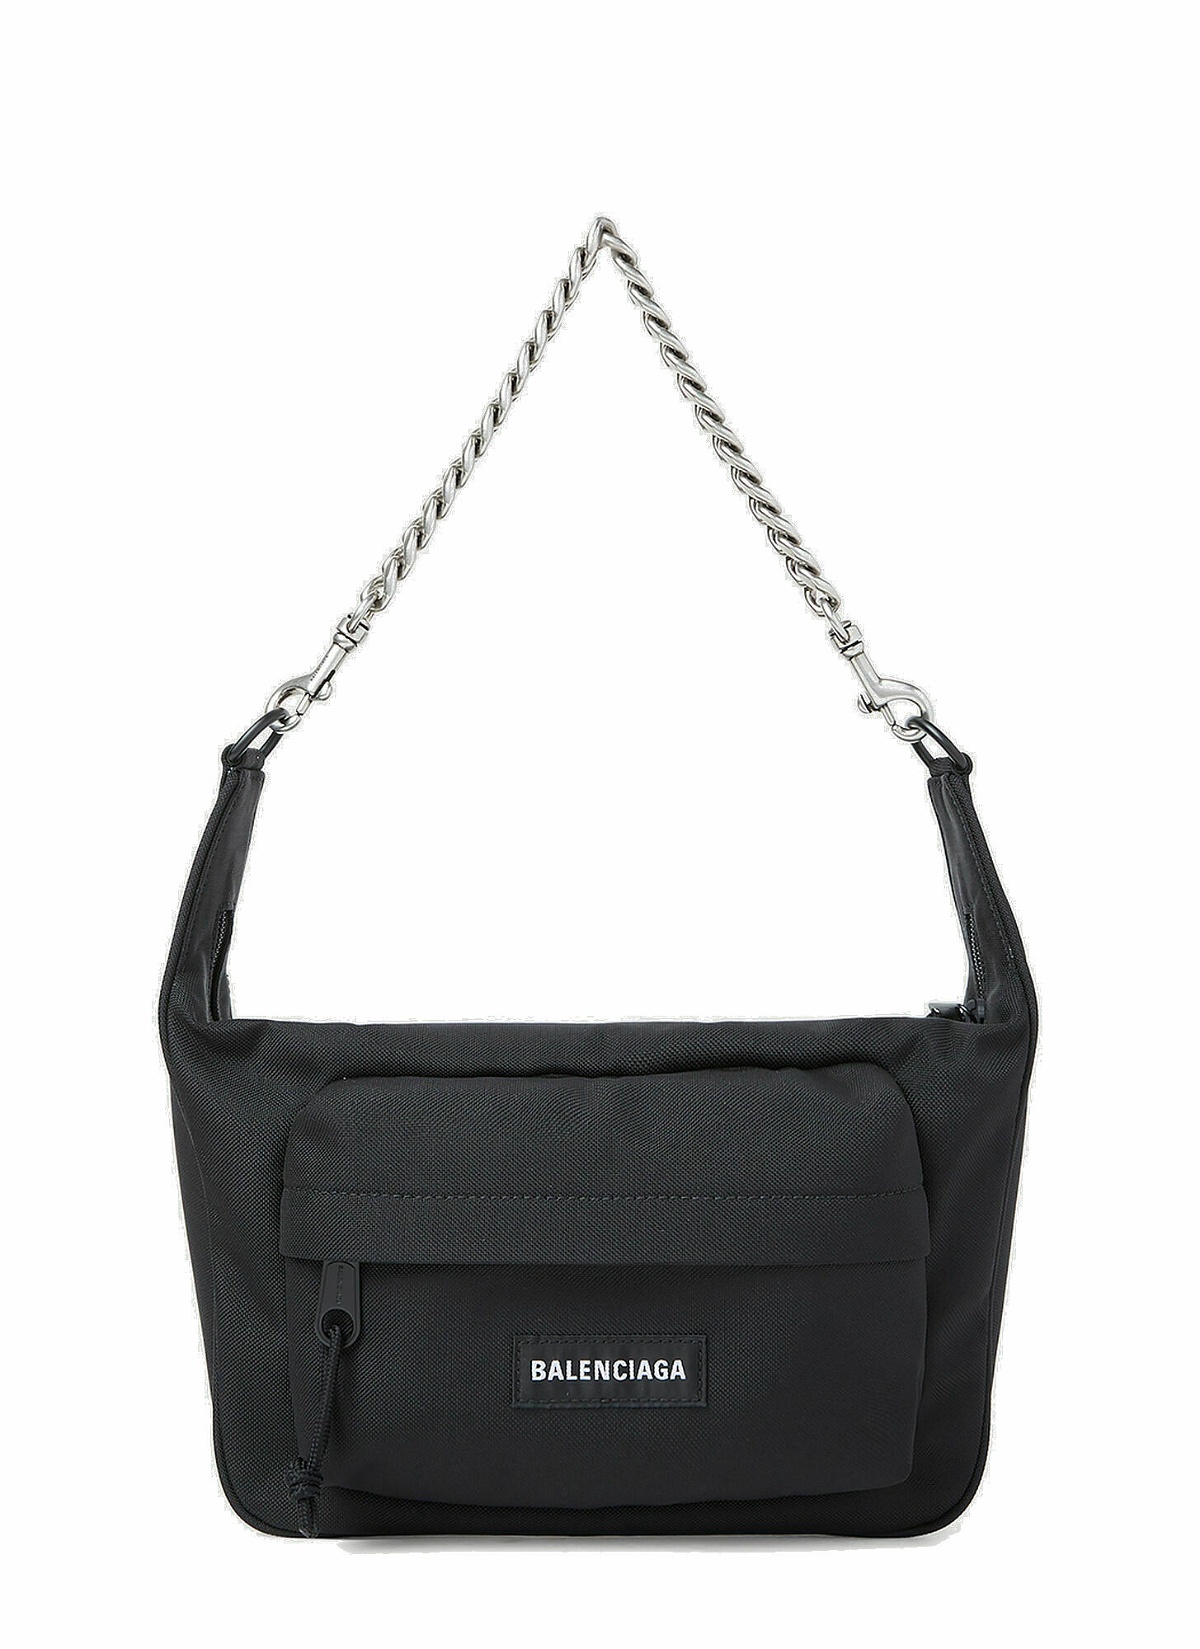 Balenciaga - Raver Shoulder Bag in Black Balenciaga